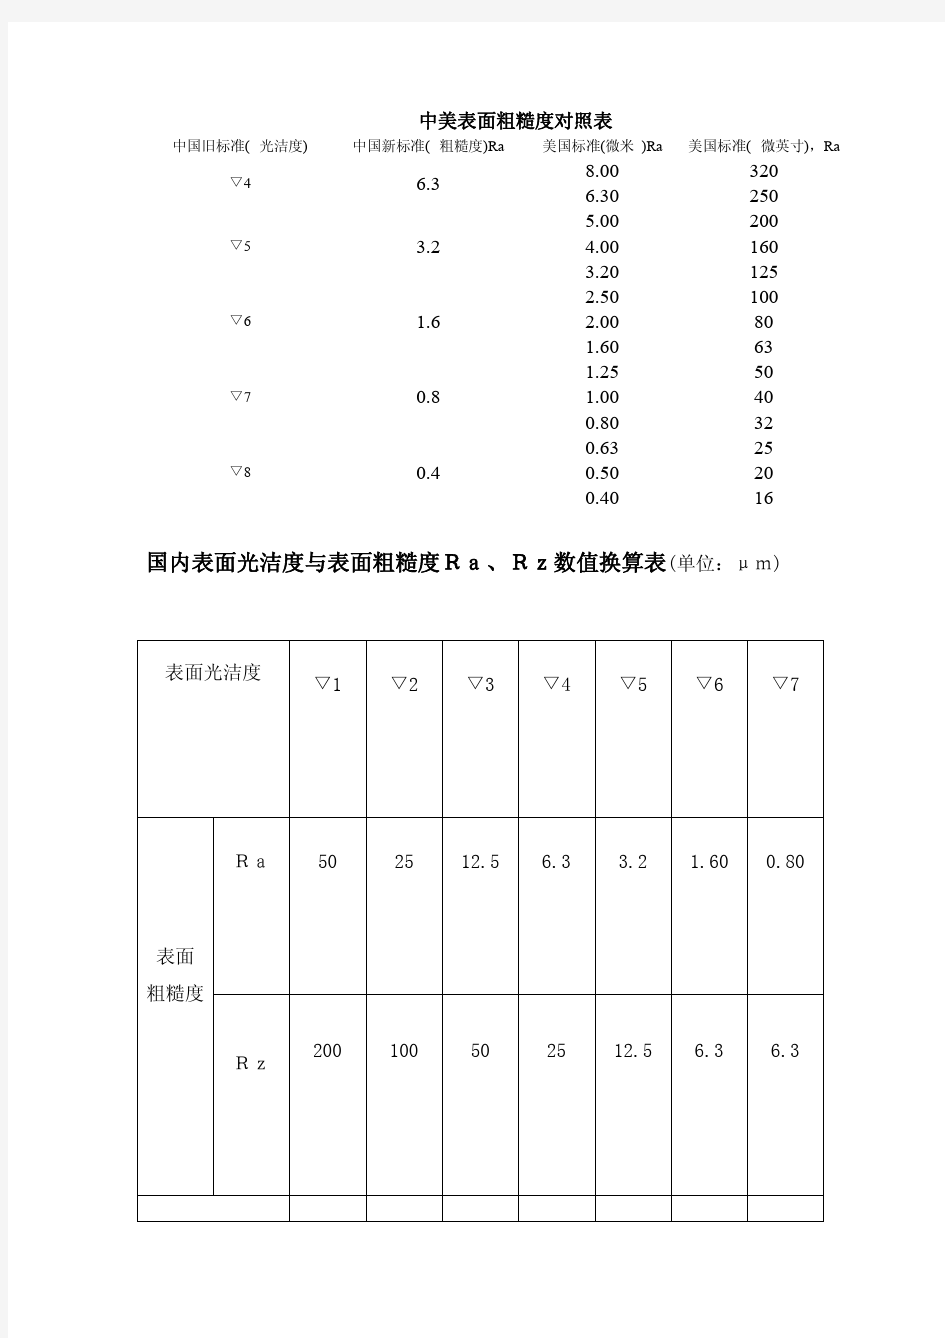 中国表面粗糙度对照表[1]